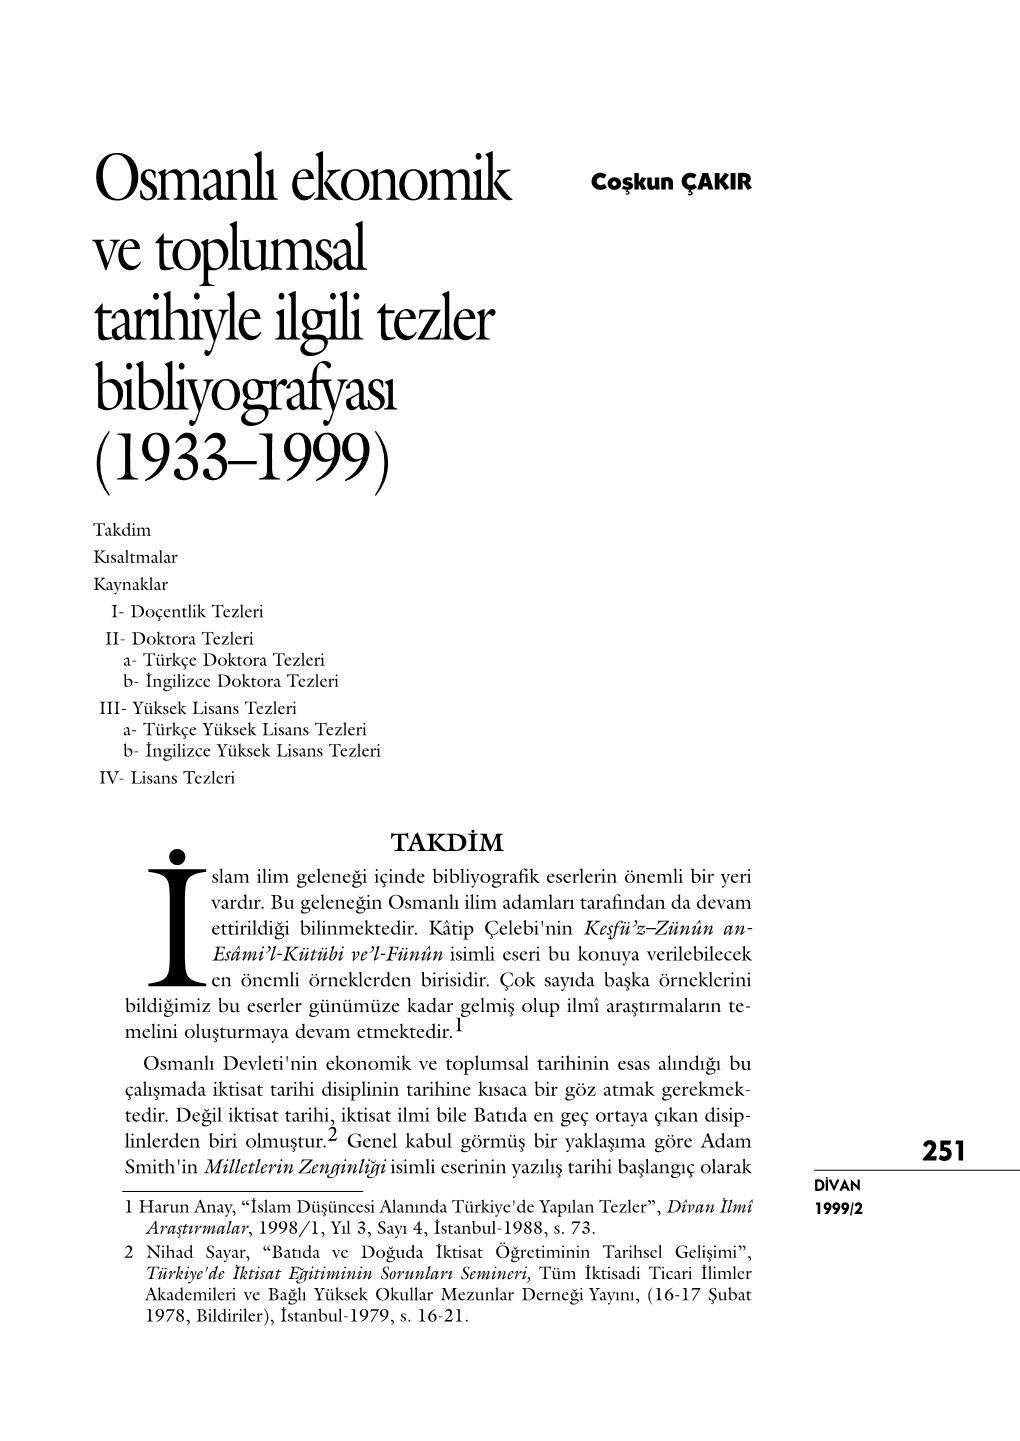 Osmanlı Ekonomik Ve Toplumsal Tarihiyle Ilgili Tezler Bibliyografyası